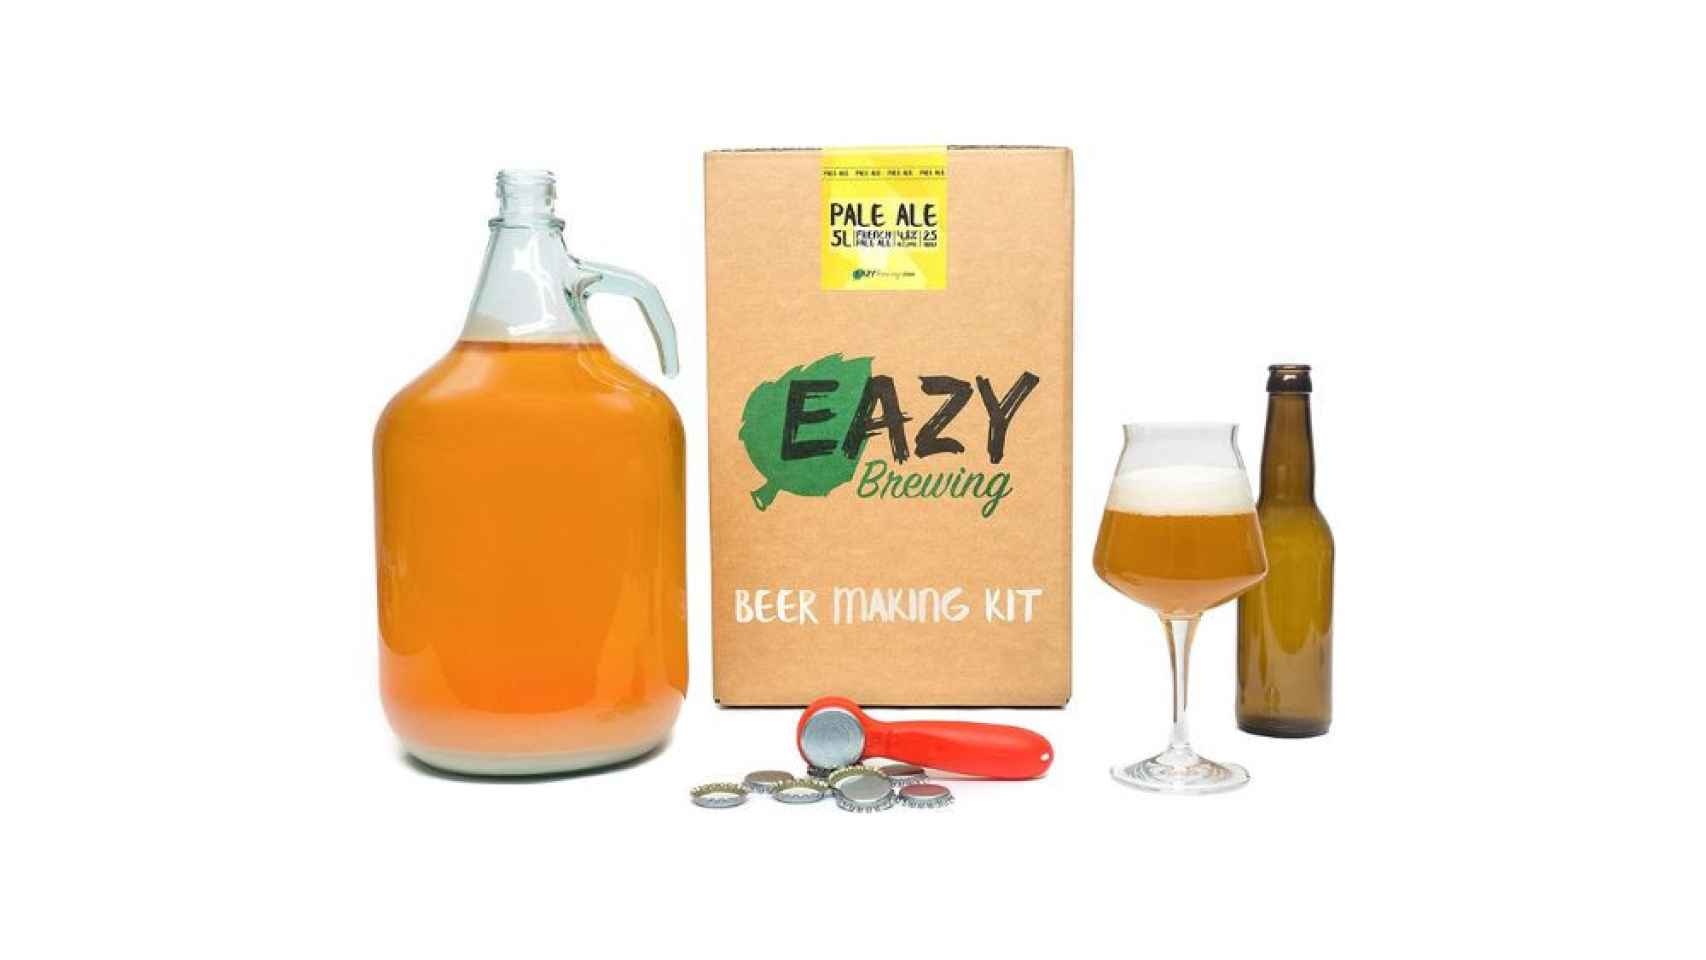 Kit de elaboración de cerveza artesanal de Eazy Brewing